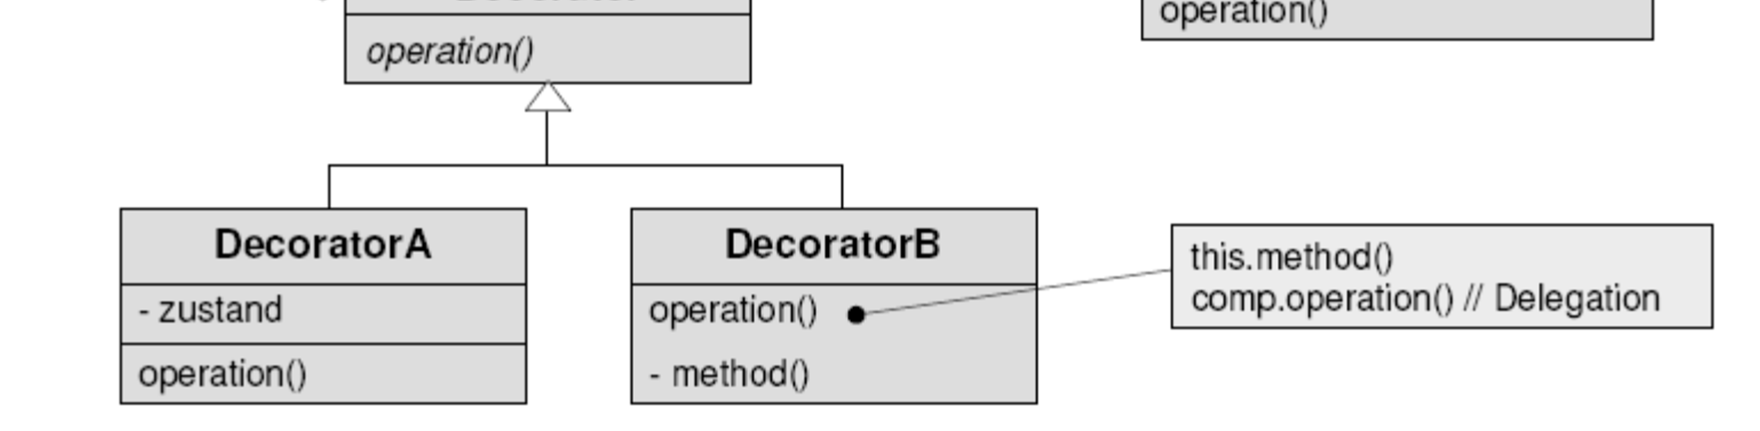 Dekorierer-Muster (Decorator) Problem: Einem Objekt müssen neue Zuständigkeiten zugeordnet werden.